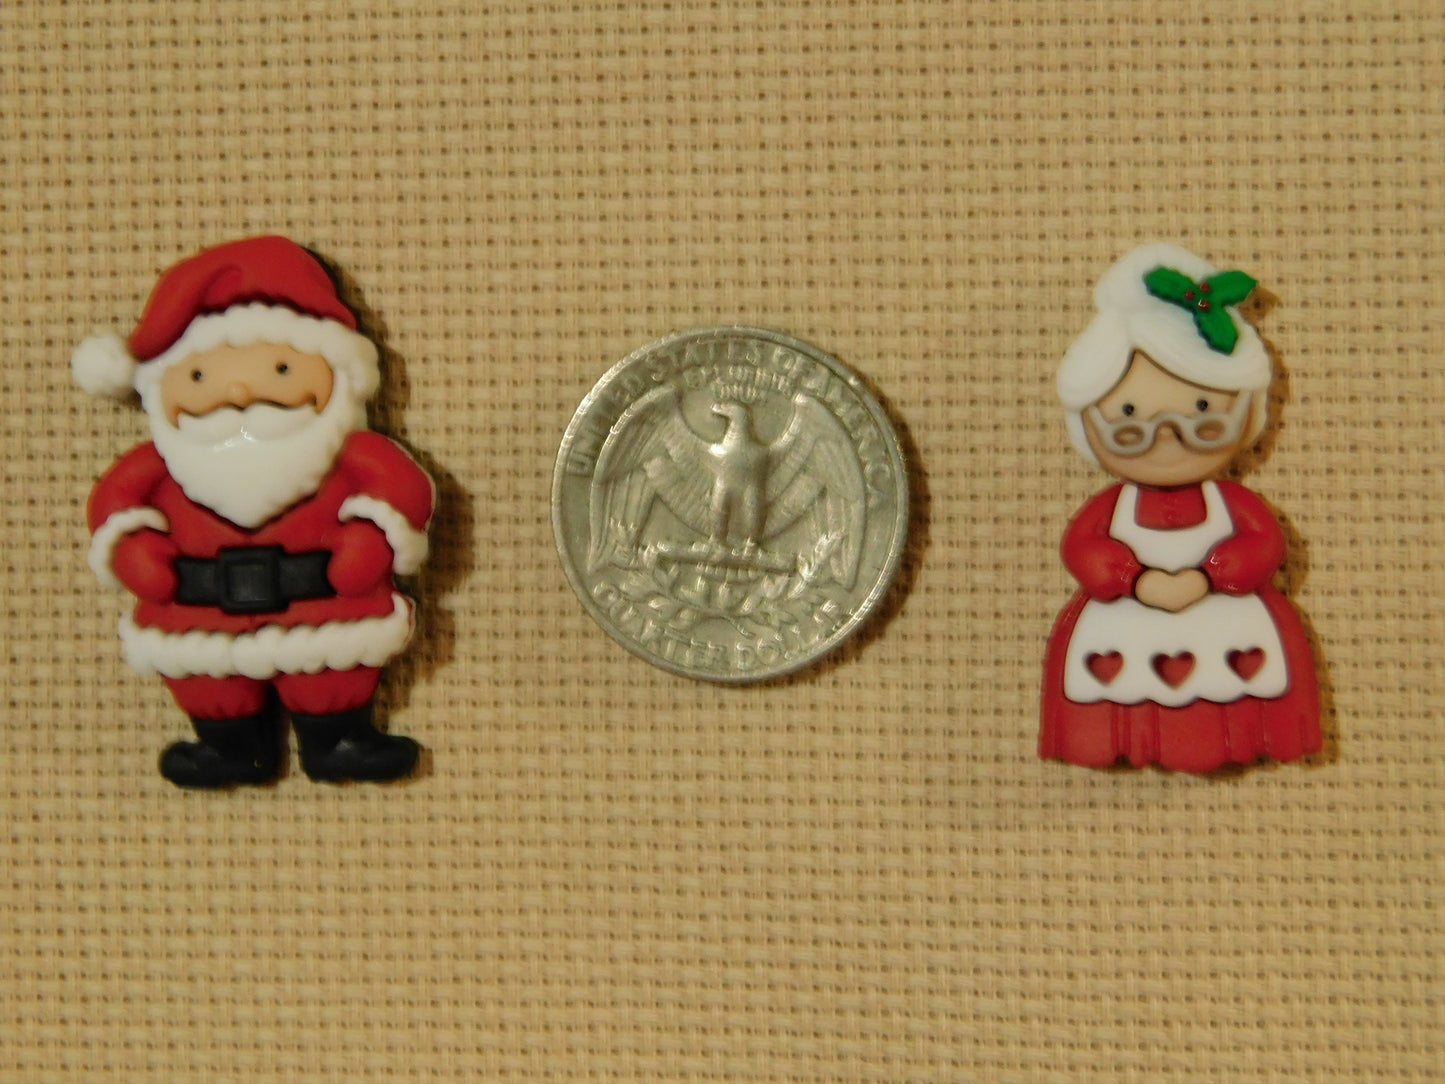 Mr. & Mrs. Santa Claus Christmas needle minders